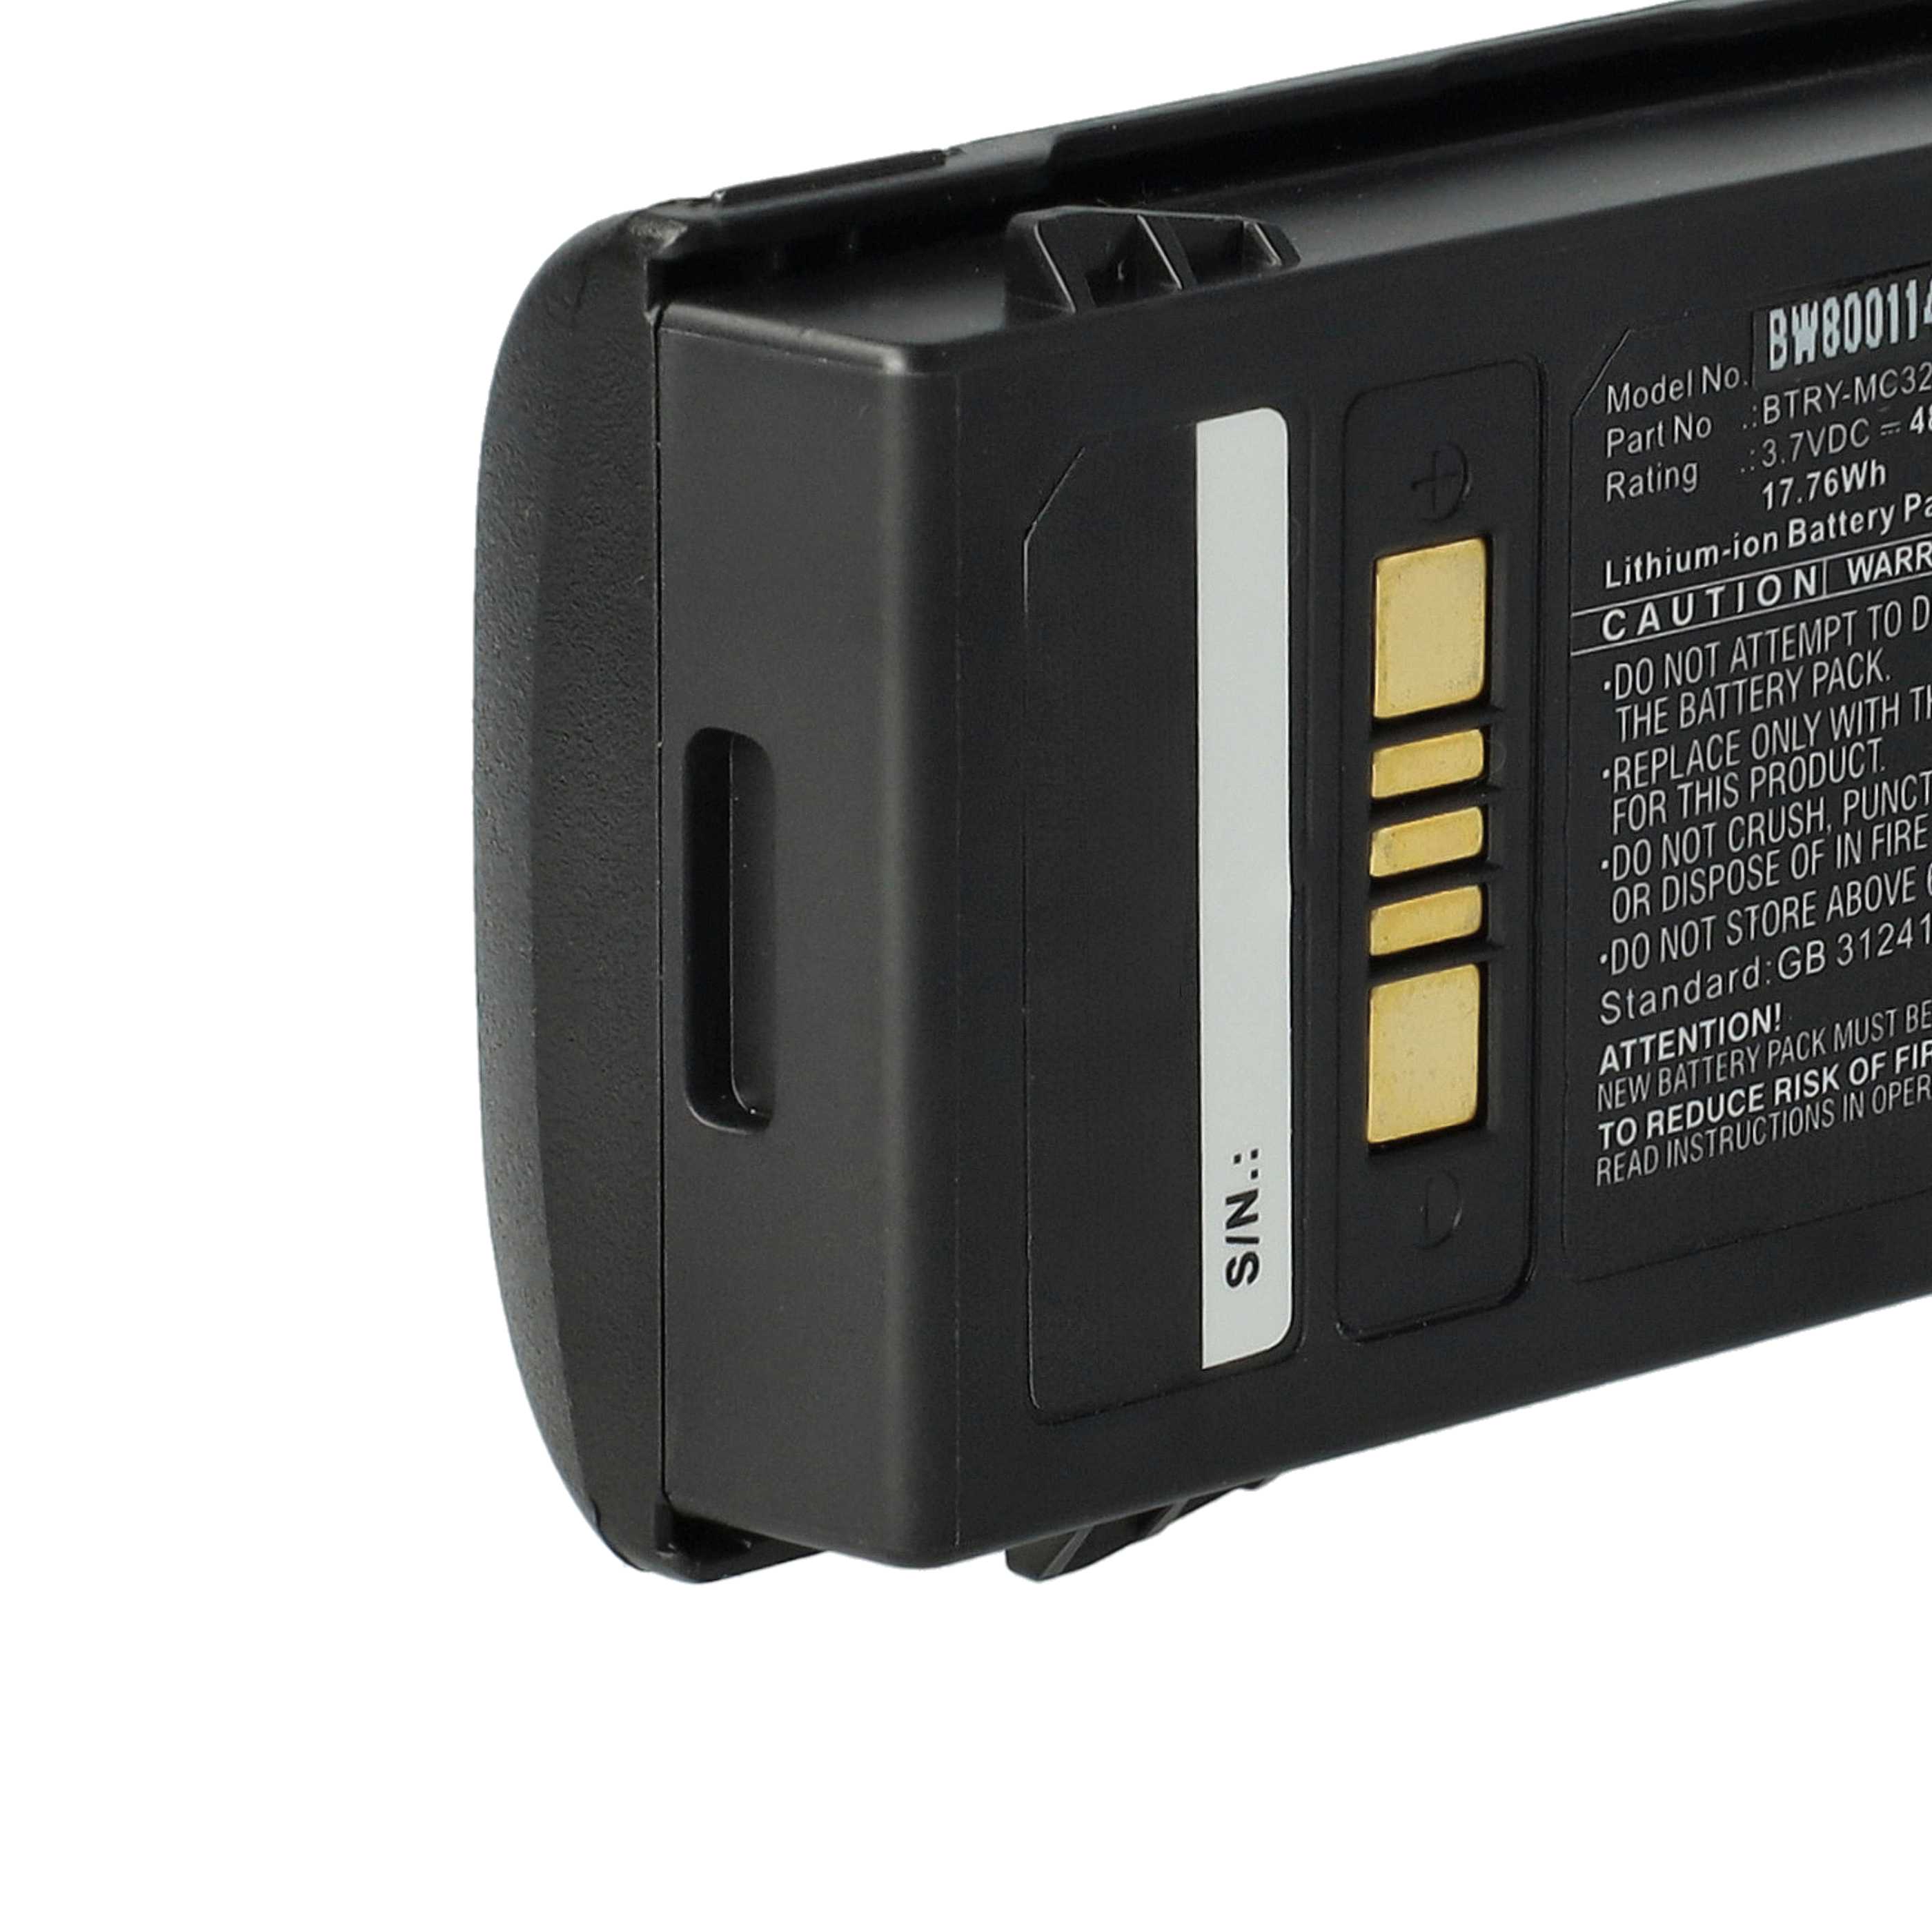 Batterie remplace Motorola BTRY-MC32-01-01 pour scanner de code-barre - 4800mAh 3,7V Li-ion